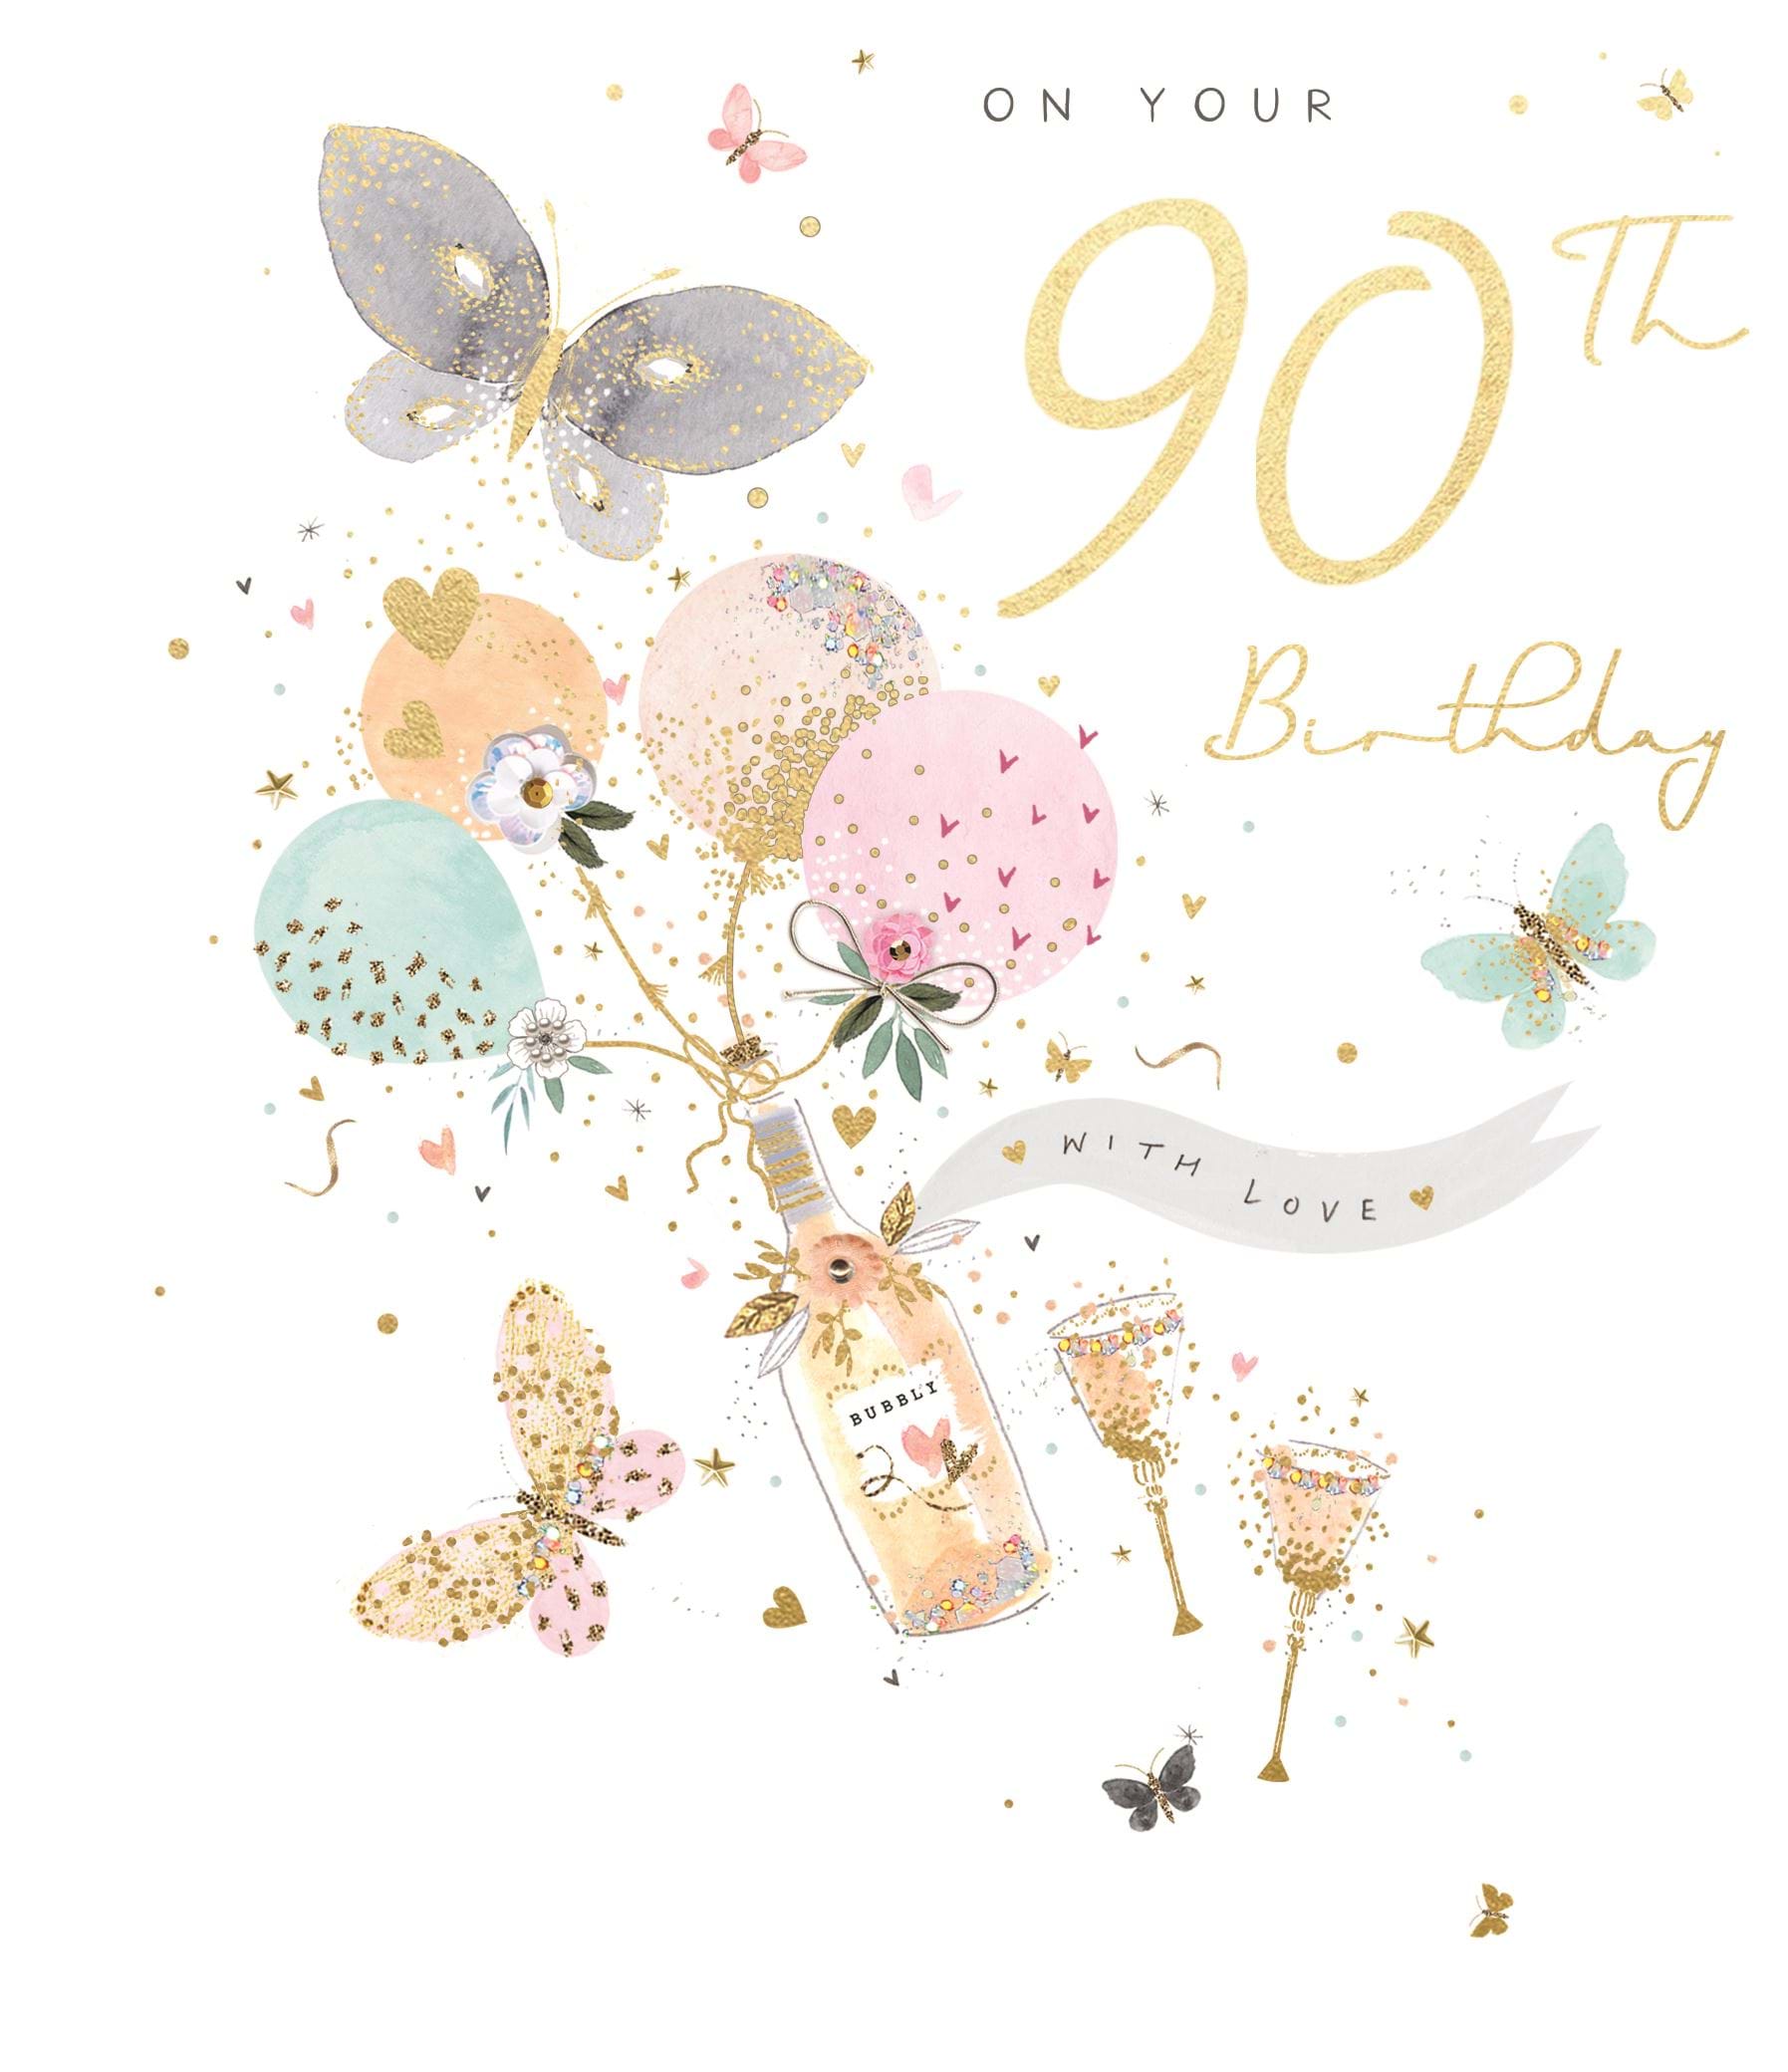 Bubbly 90th Birthday Card